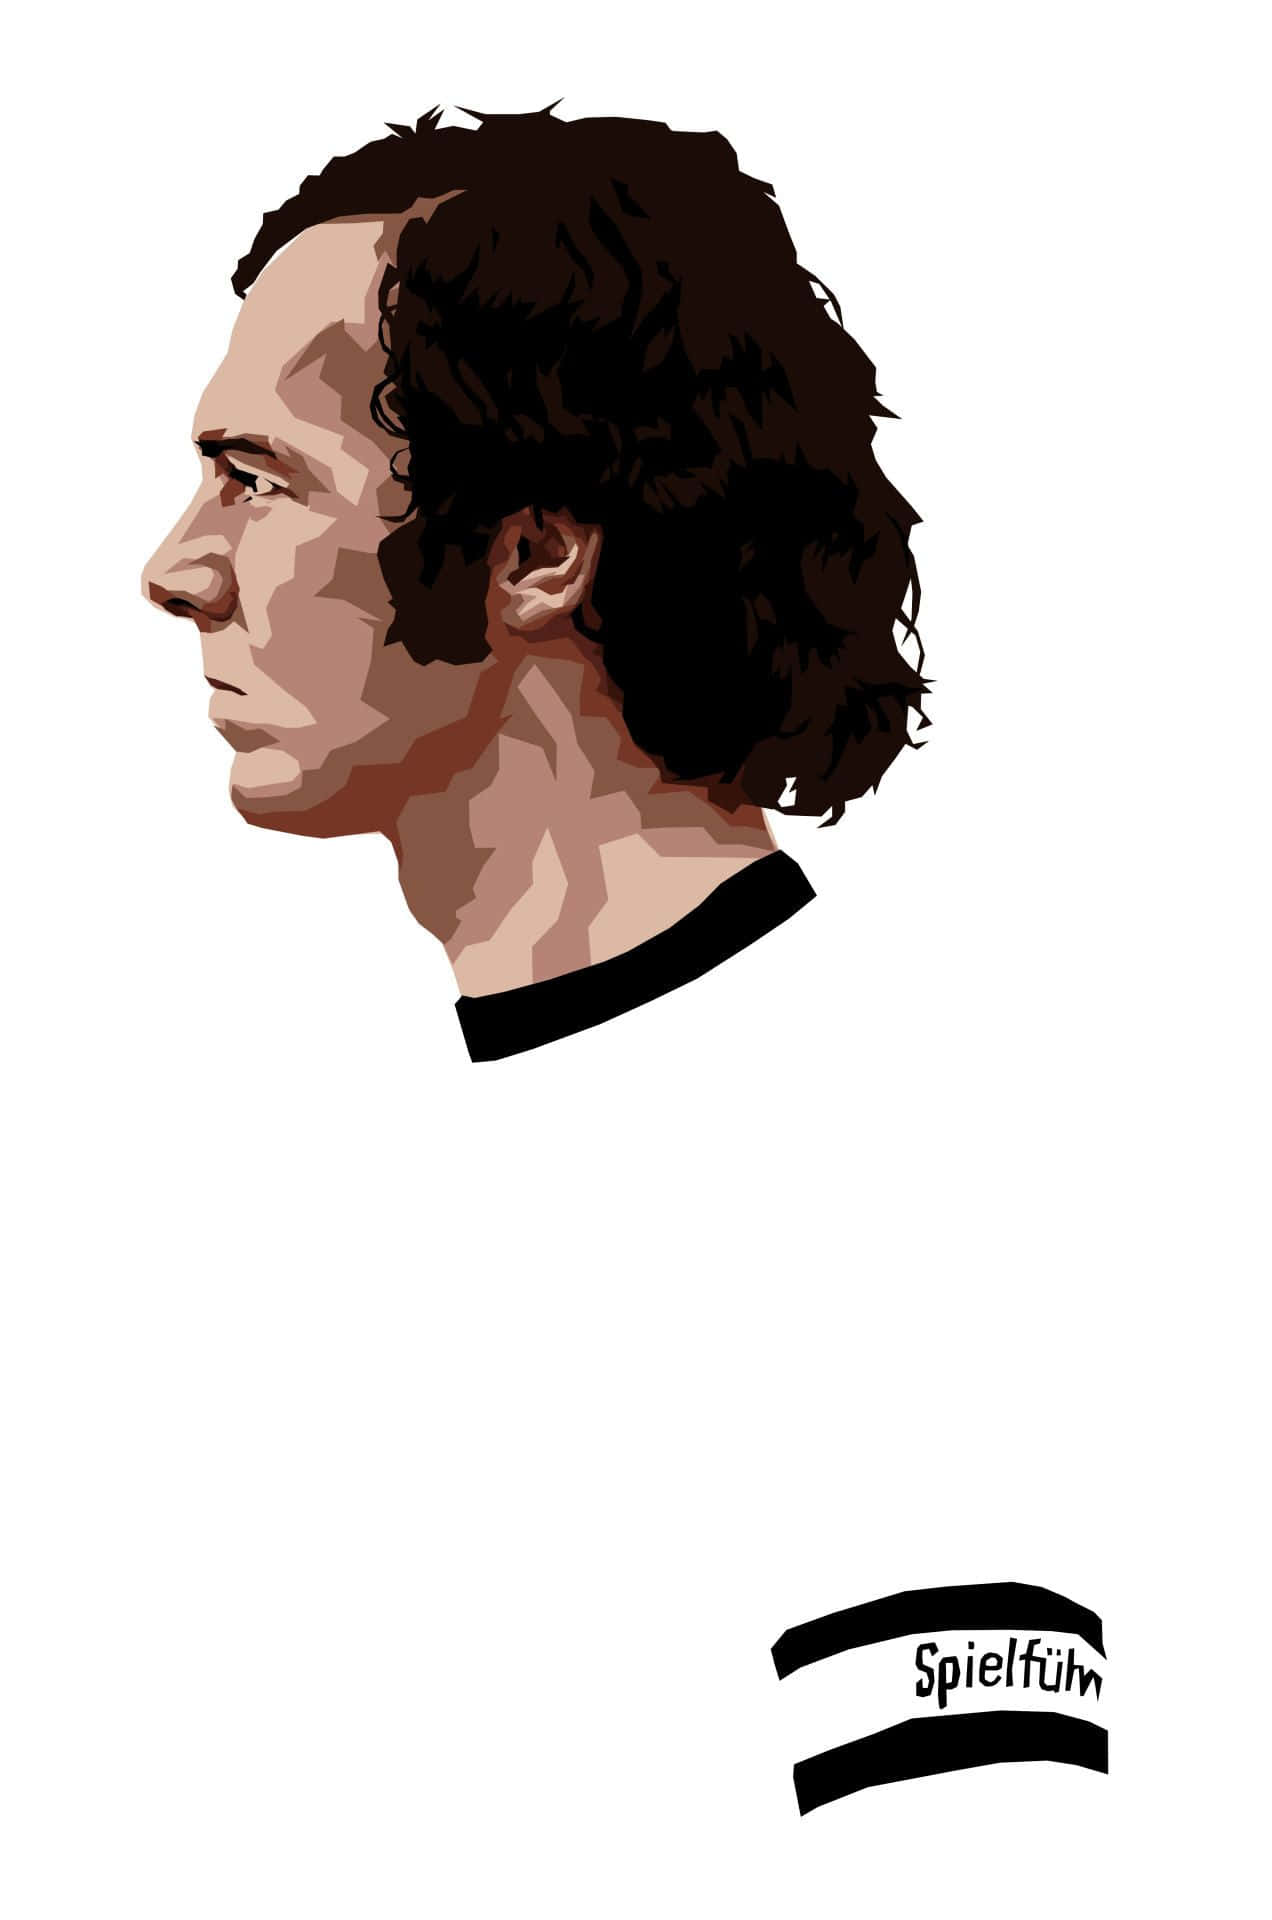 Franz Beckenbauer Digital Painting Wallpaper